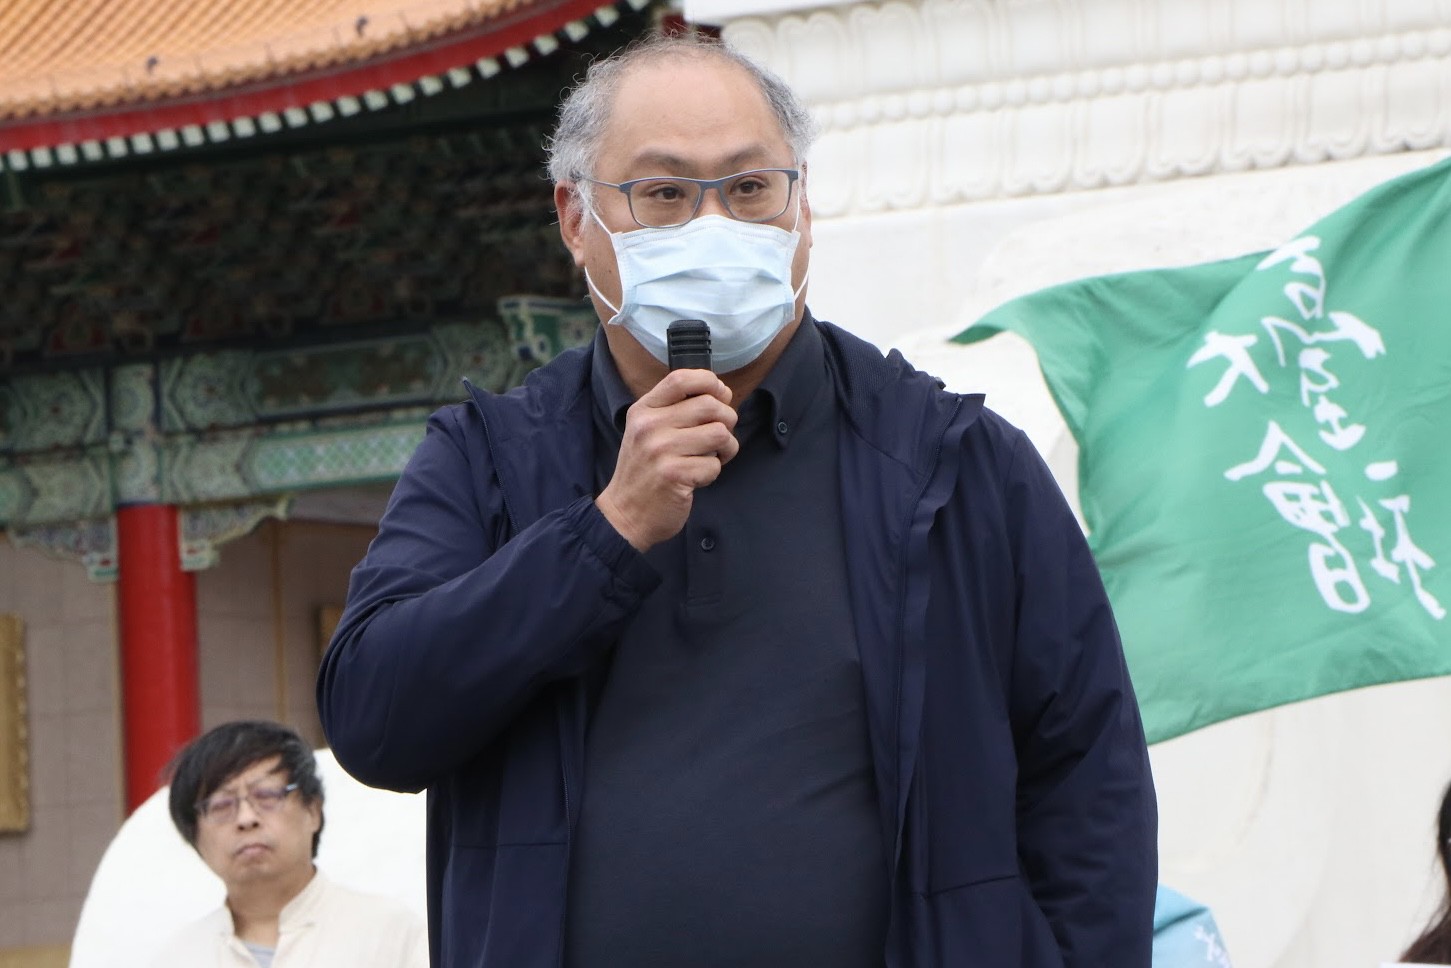 曾遭中国监禁的台湾NGO工作者李明哲也现身活动现场。